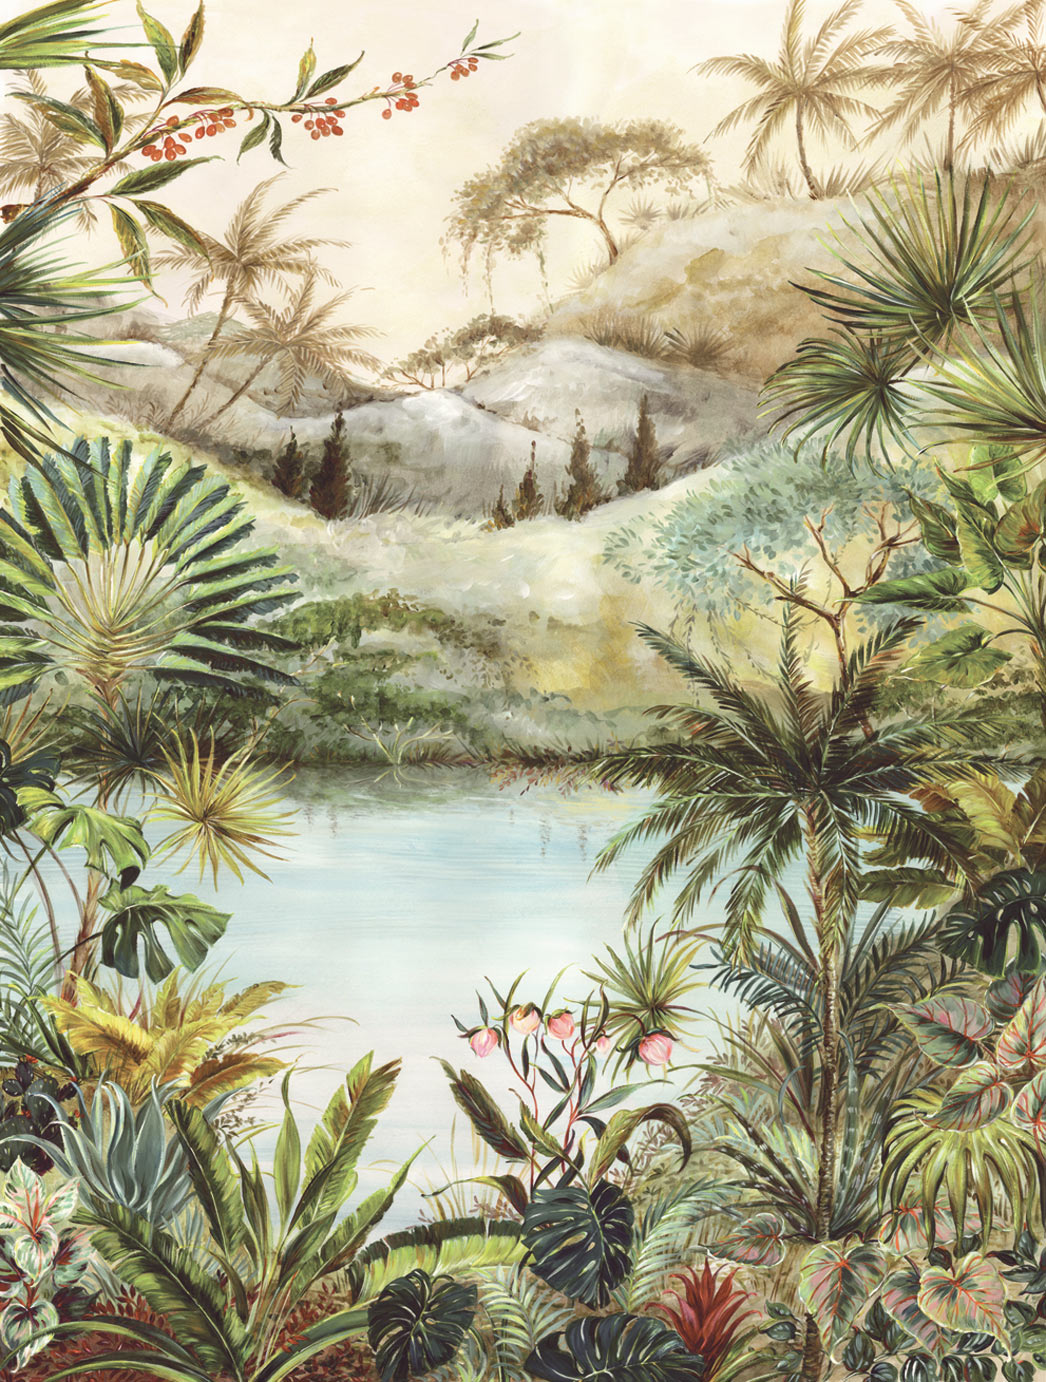 Vivid Tropical Landscape mural